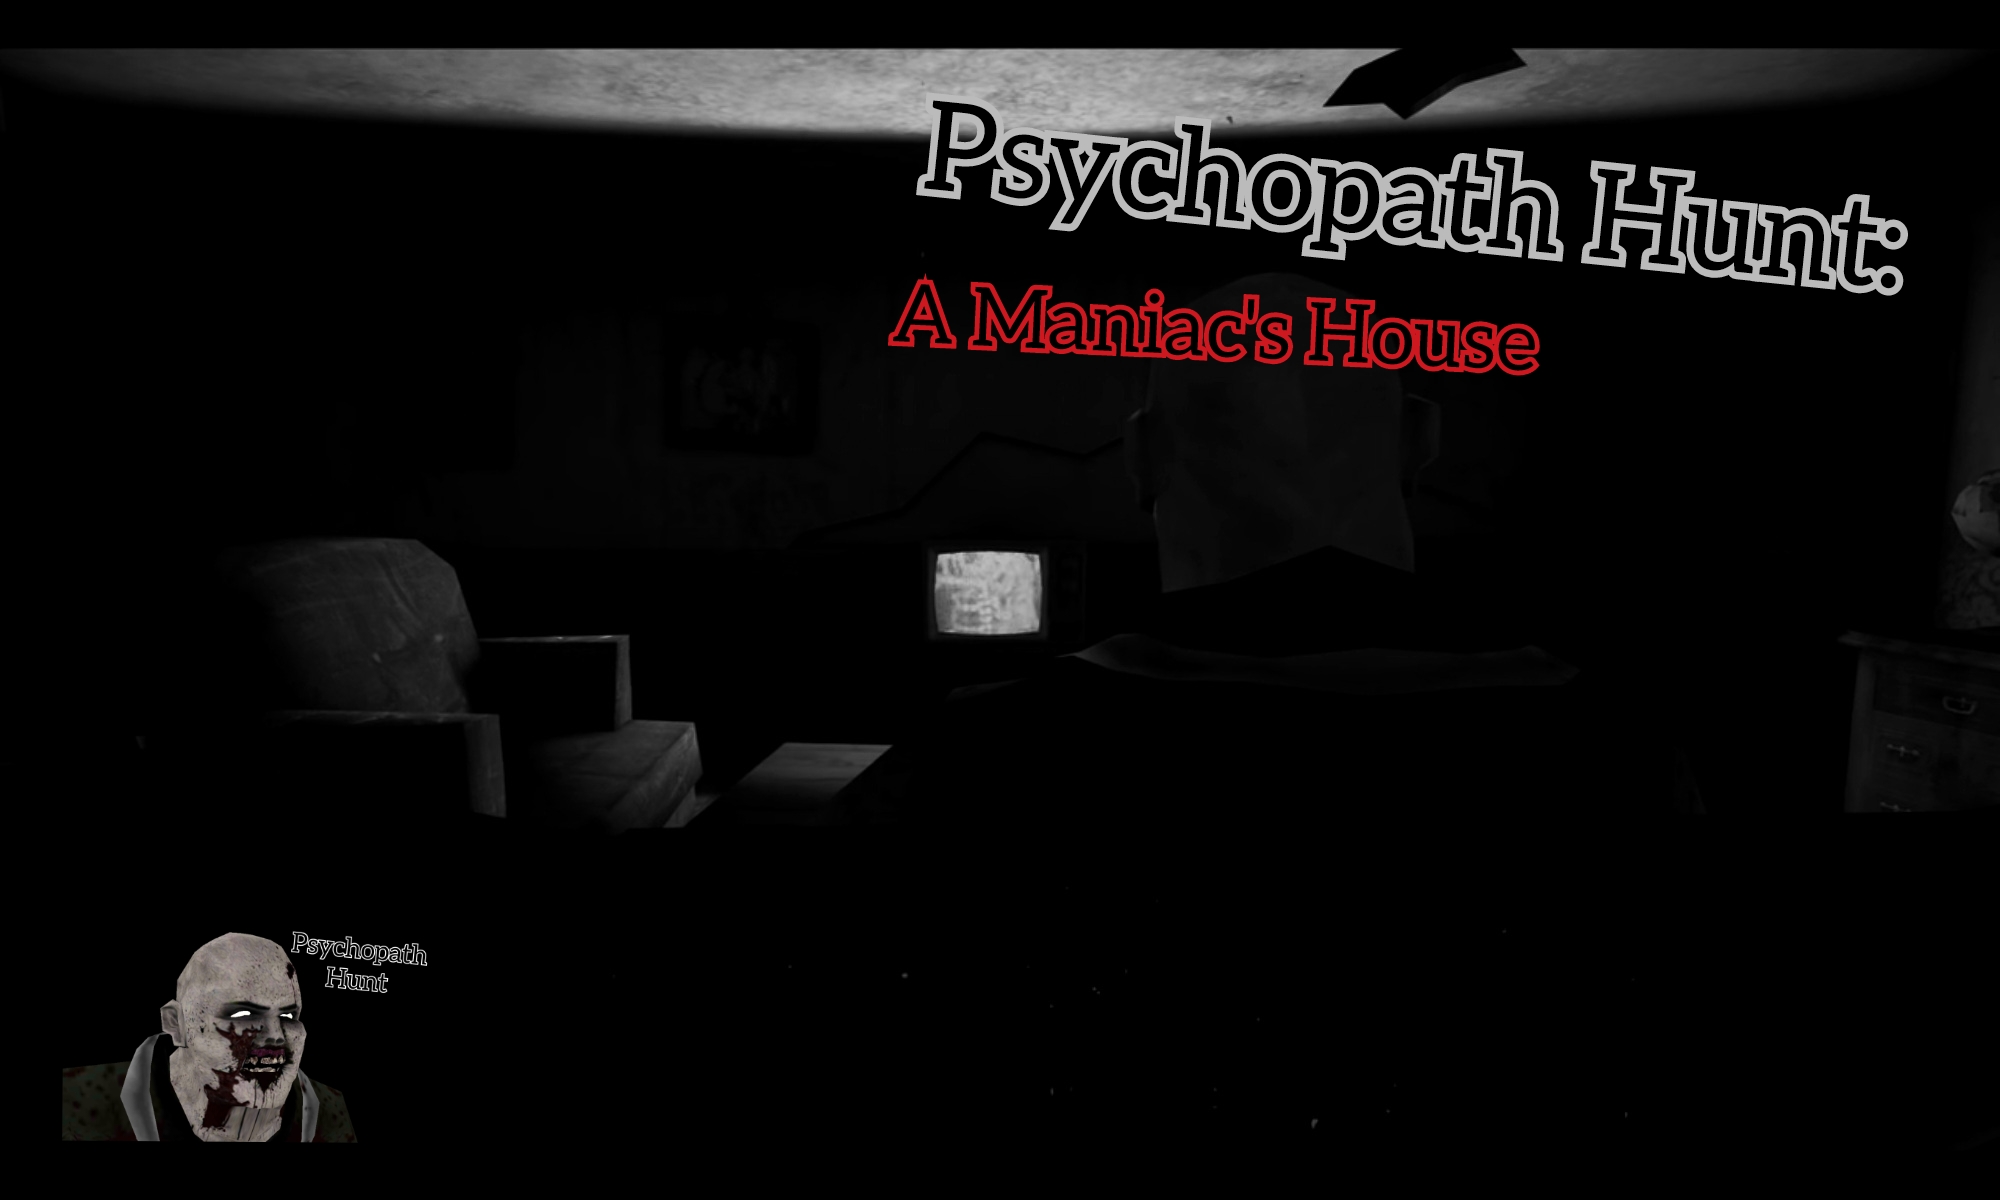 Psychopath Hunt: A Maniac's House